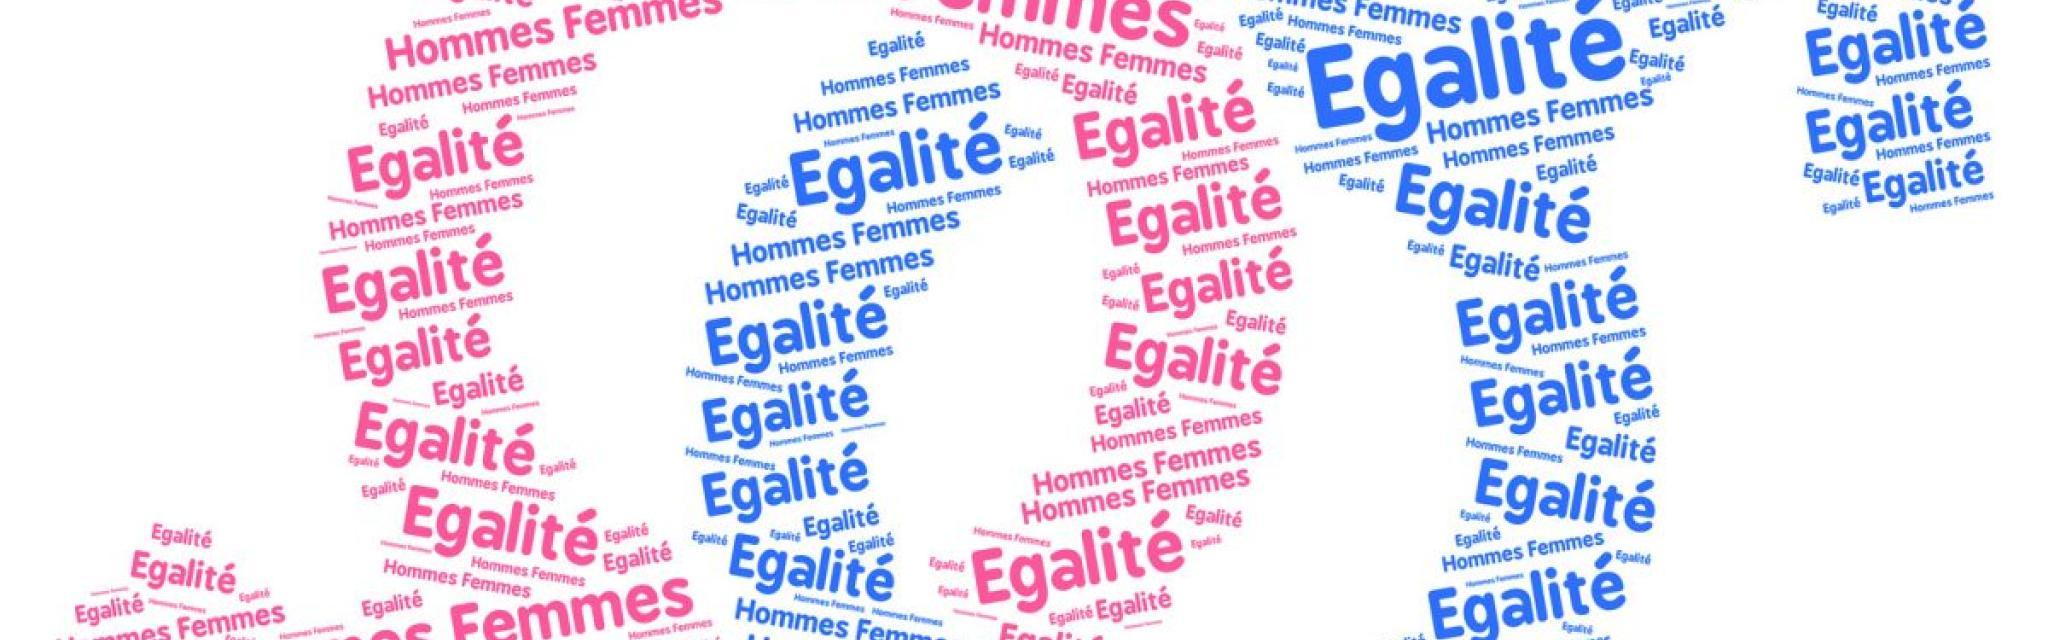 Французские девизы. Франция для всех лозунг. Egalite. Девиз французской Республики. Liberte egalite Fraternite.